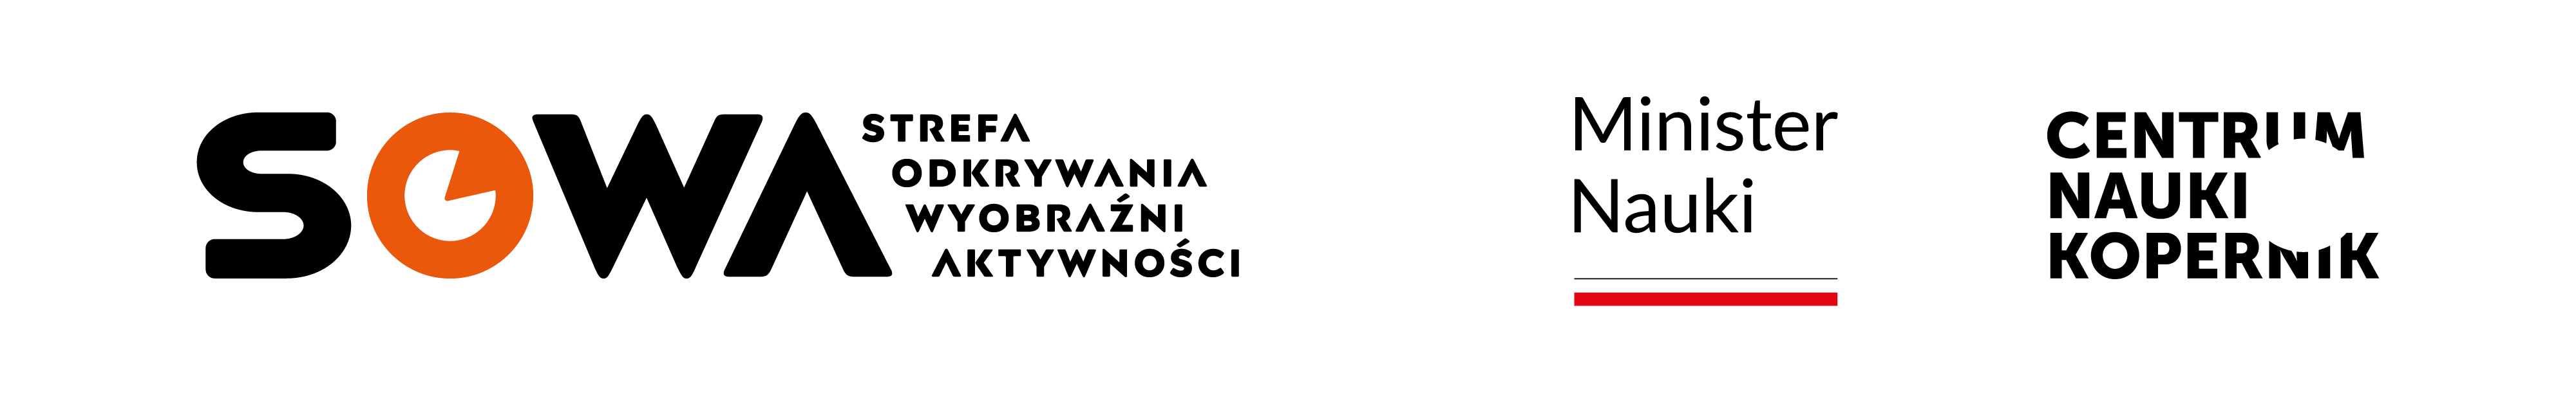 logo sowa, ministra nauki i centrum nauki kopernik